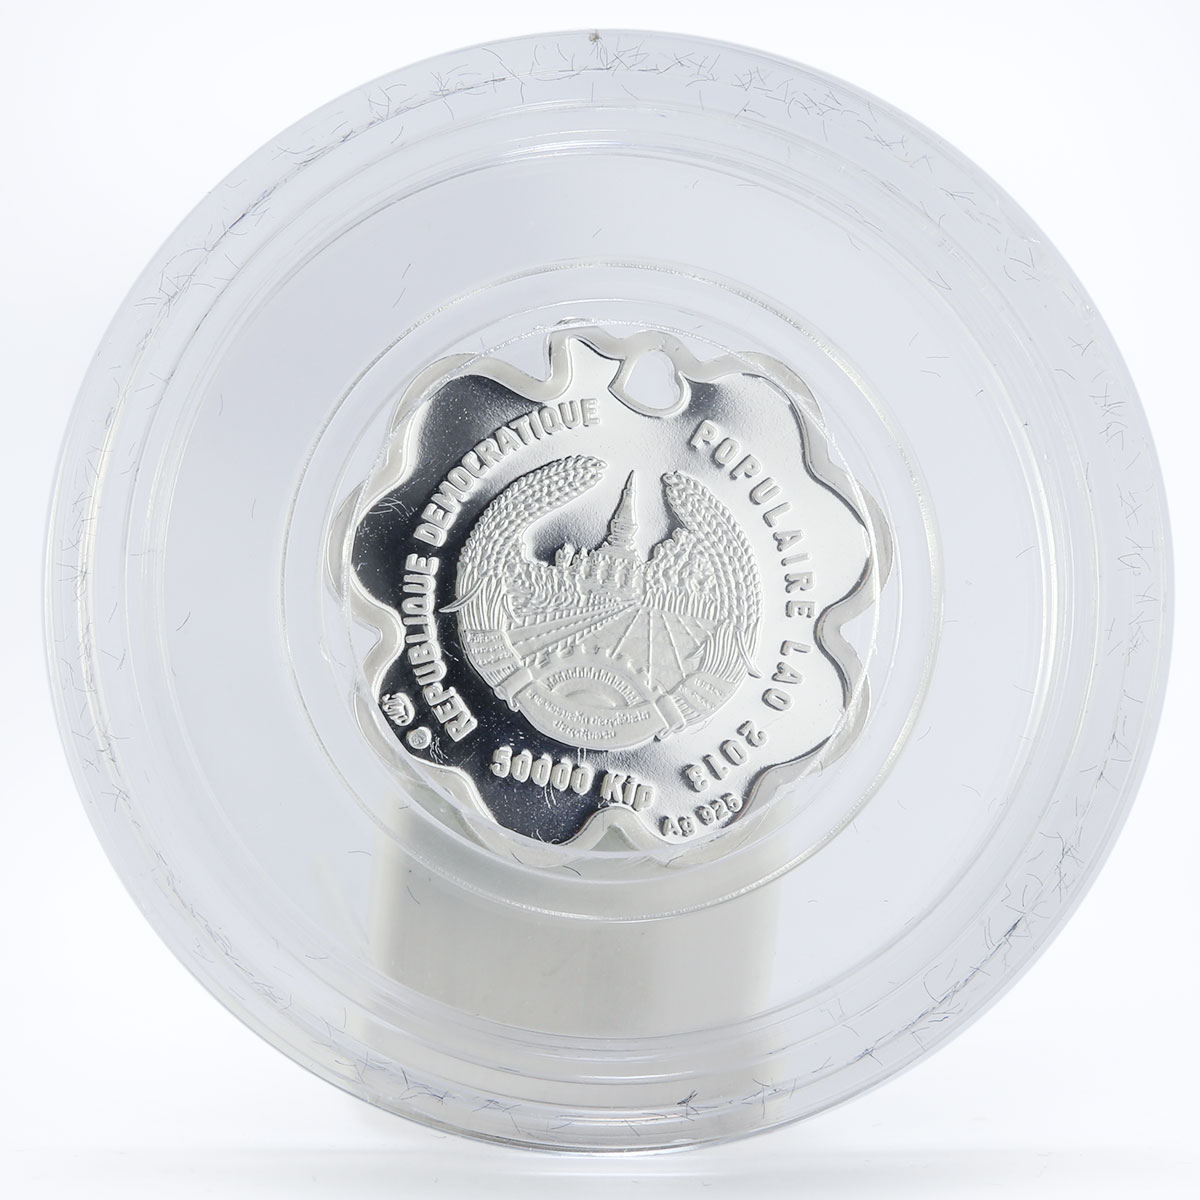 Laos 50000 kip Clover luck colored silver coin 2013